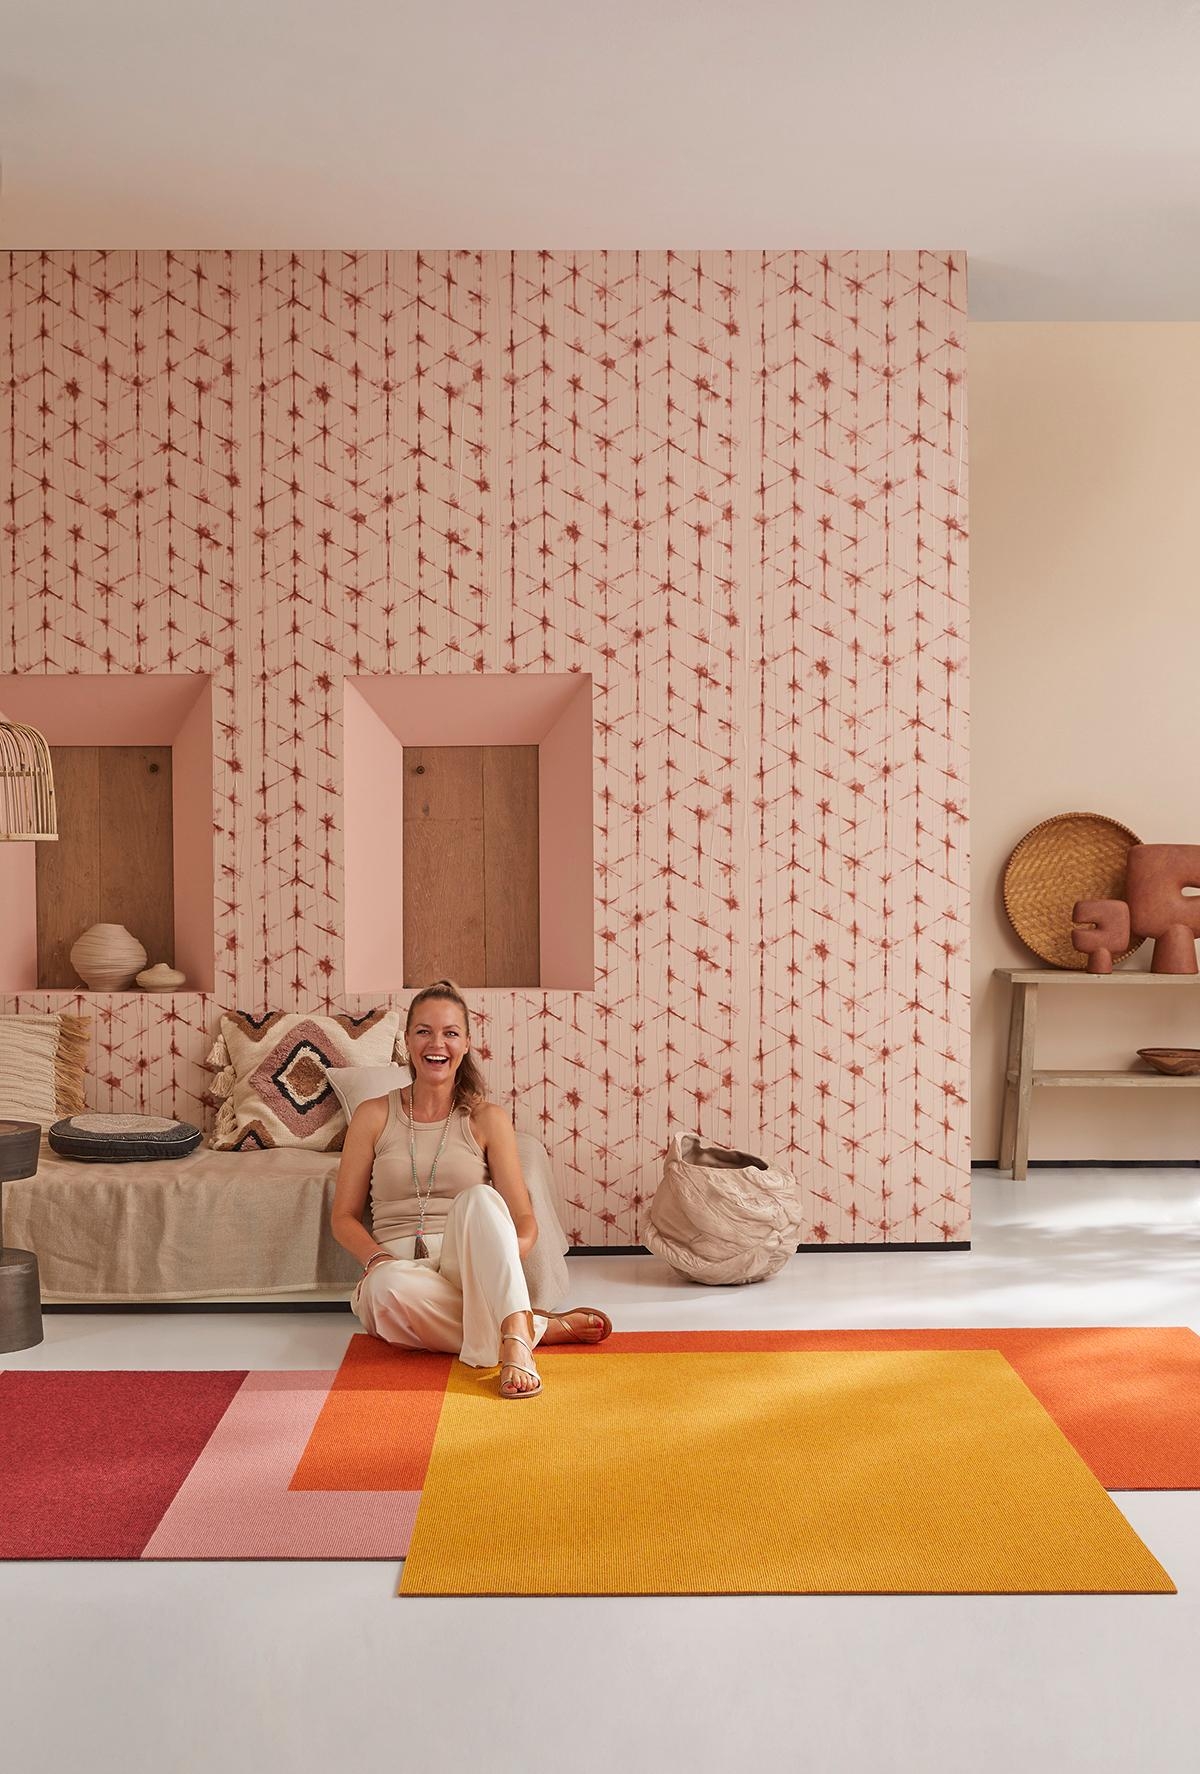 Für #tretford hat #EvaBrenner vier Teppiche entworfen, die Urlaubs-Flair versprühen #wohnzimmerumstyling